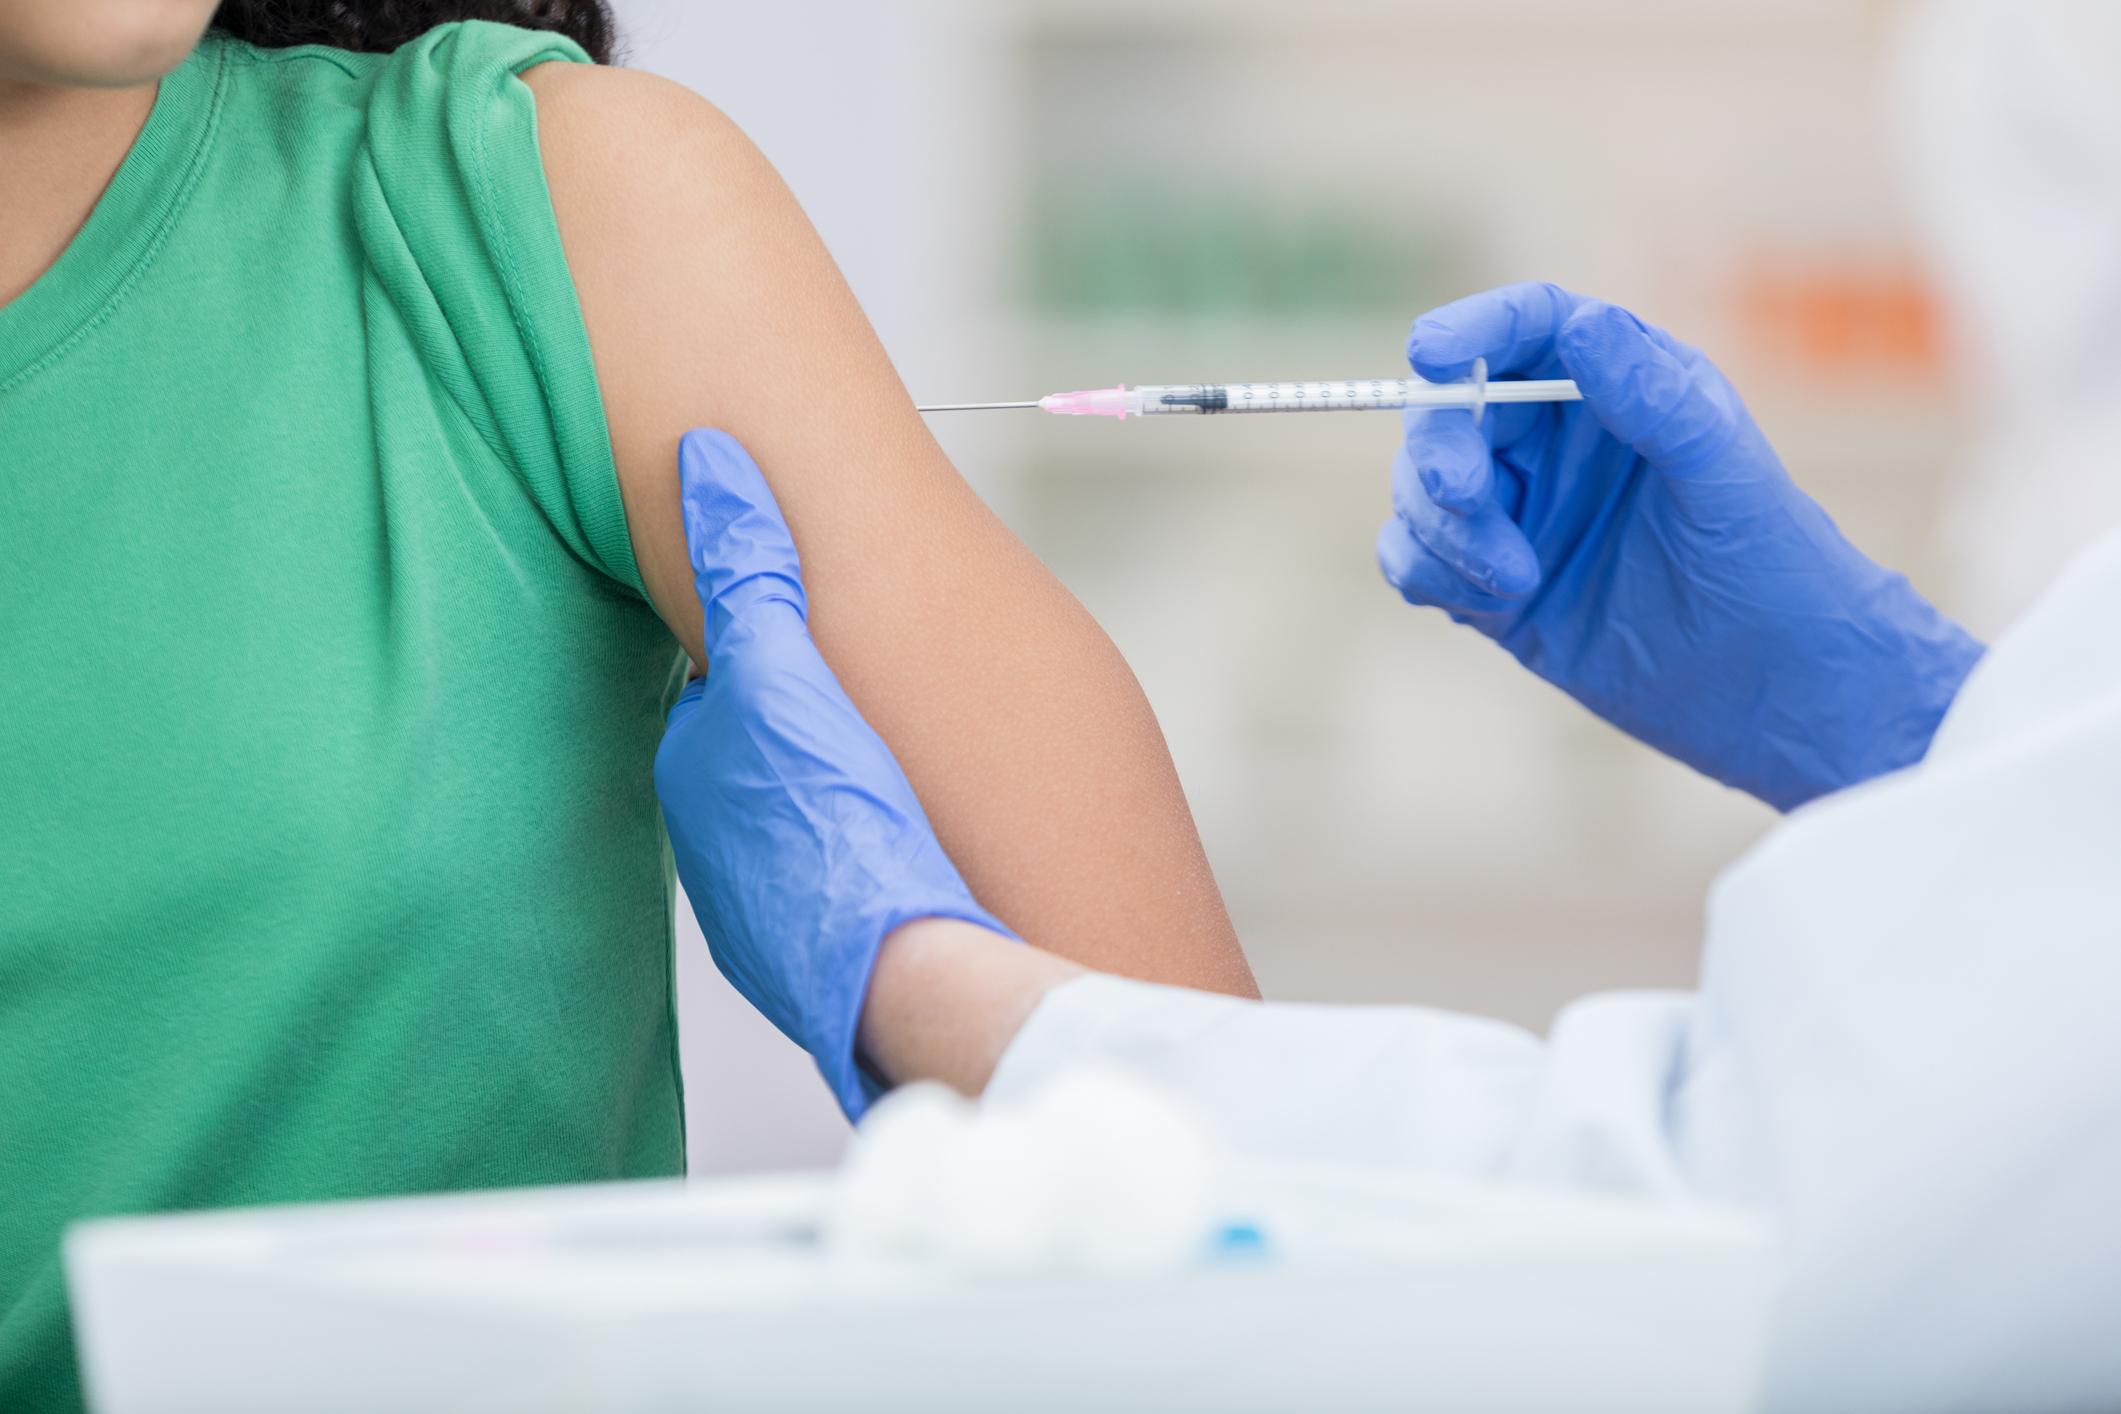 หญิงวัยรุ่นคนหนึ่งได้รับวัคซีนไข้หวัด